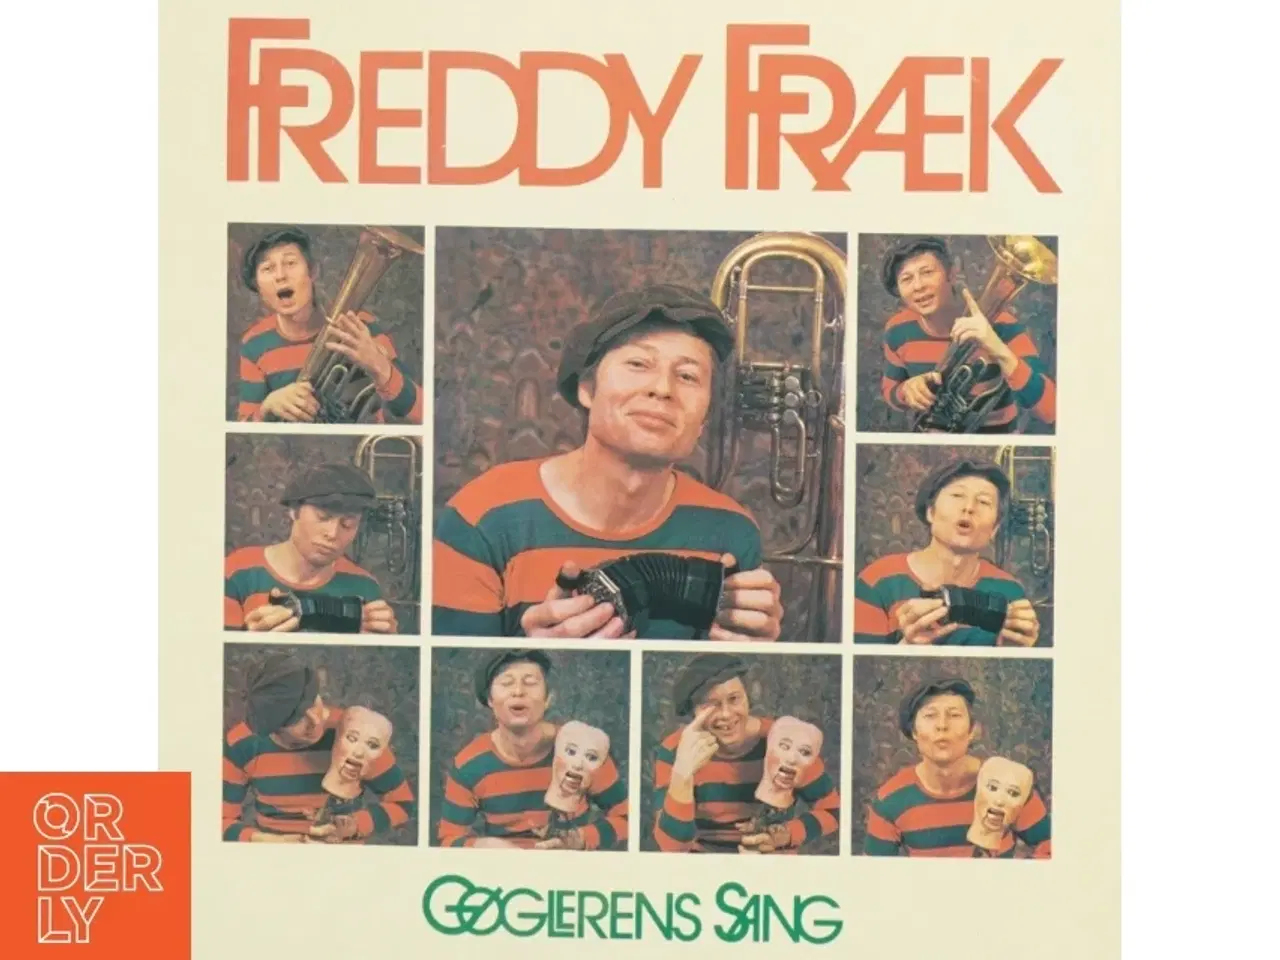 Billede 1 - Freddy Fræk "Gøglerens Sang" Vinylplade fra Capitol Records (str. 31 x 31 cm)